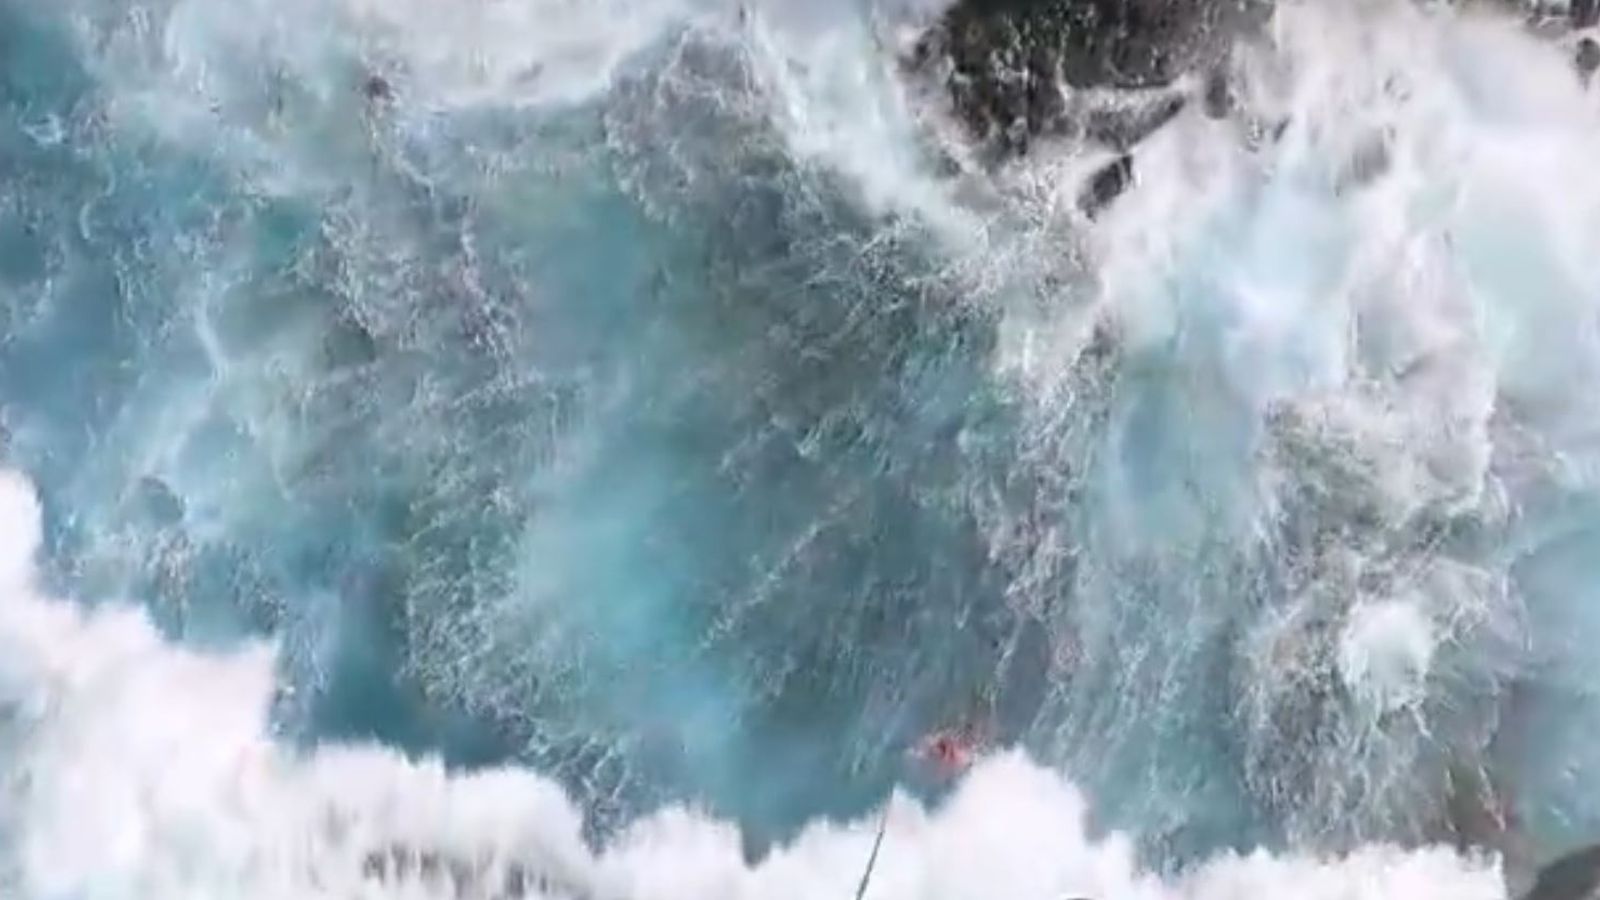 Турист почина, след като падна в морето в Тенерифе - като кадри показват екстремни вълни, удрящи крайбрежието